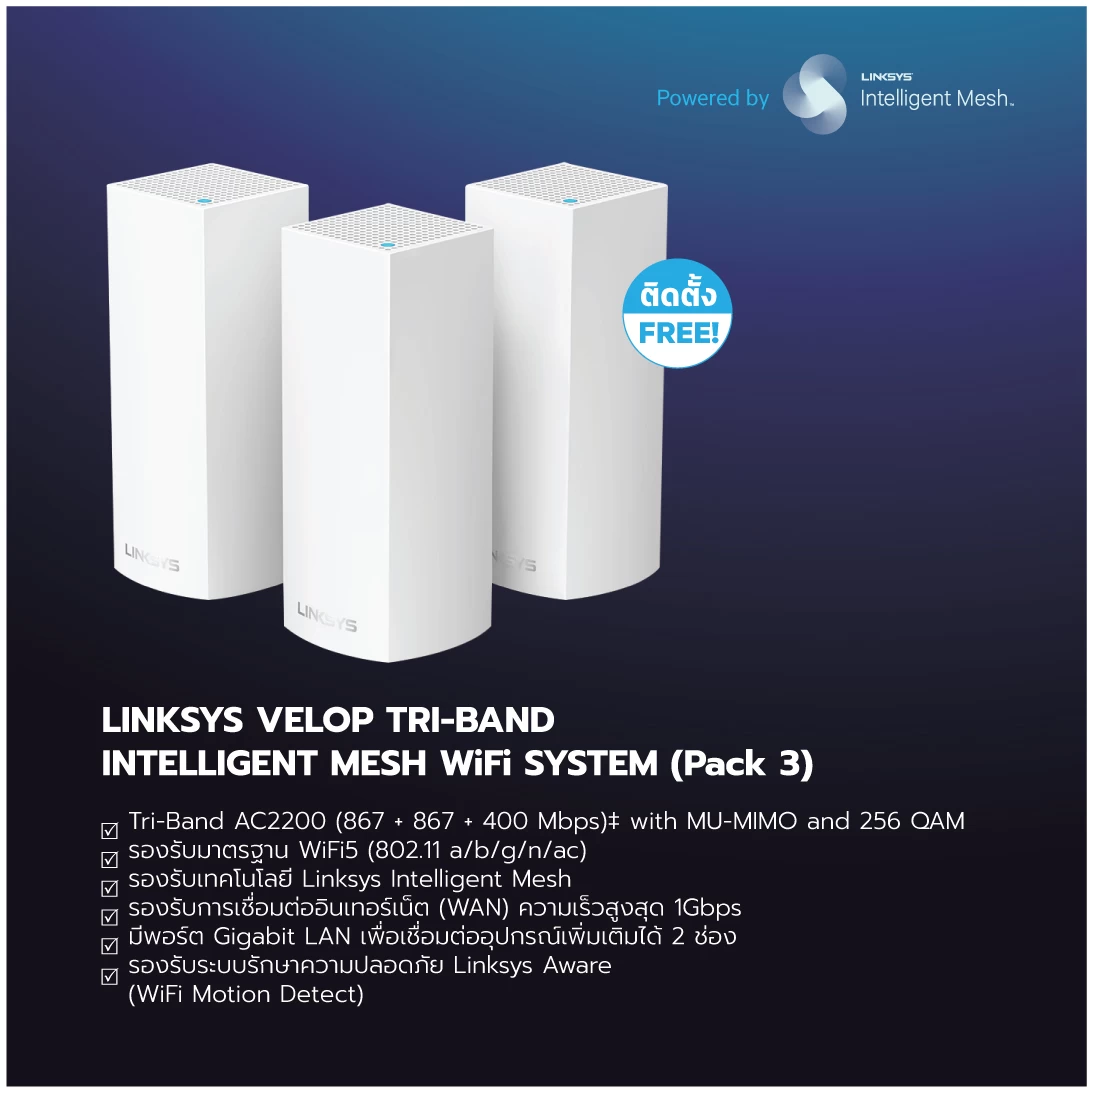 FB Linksys Expo 1 07 | Linksys | แจ้งโปรแรง Linksys จัดโปรโมชั่นเราเตอร์ Velop ลดเกินกว่าครึ่ง!